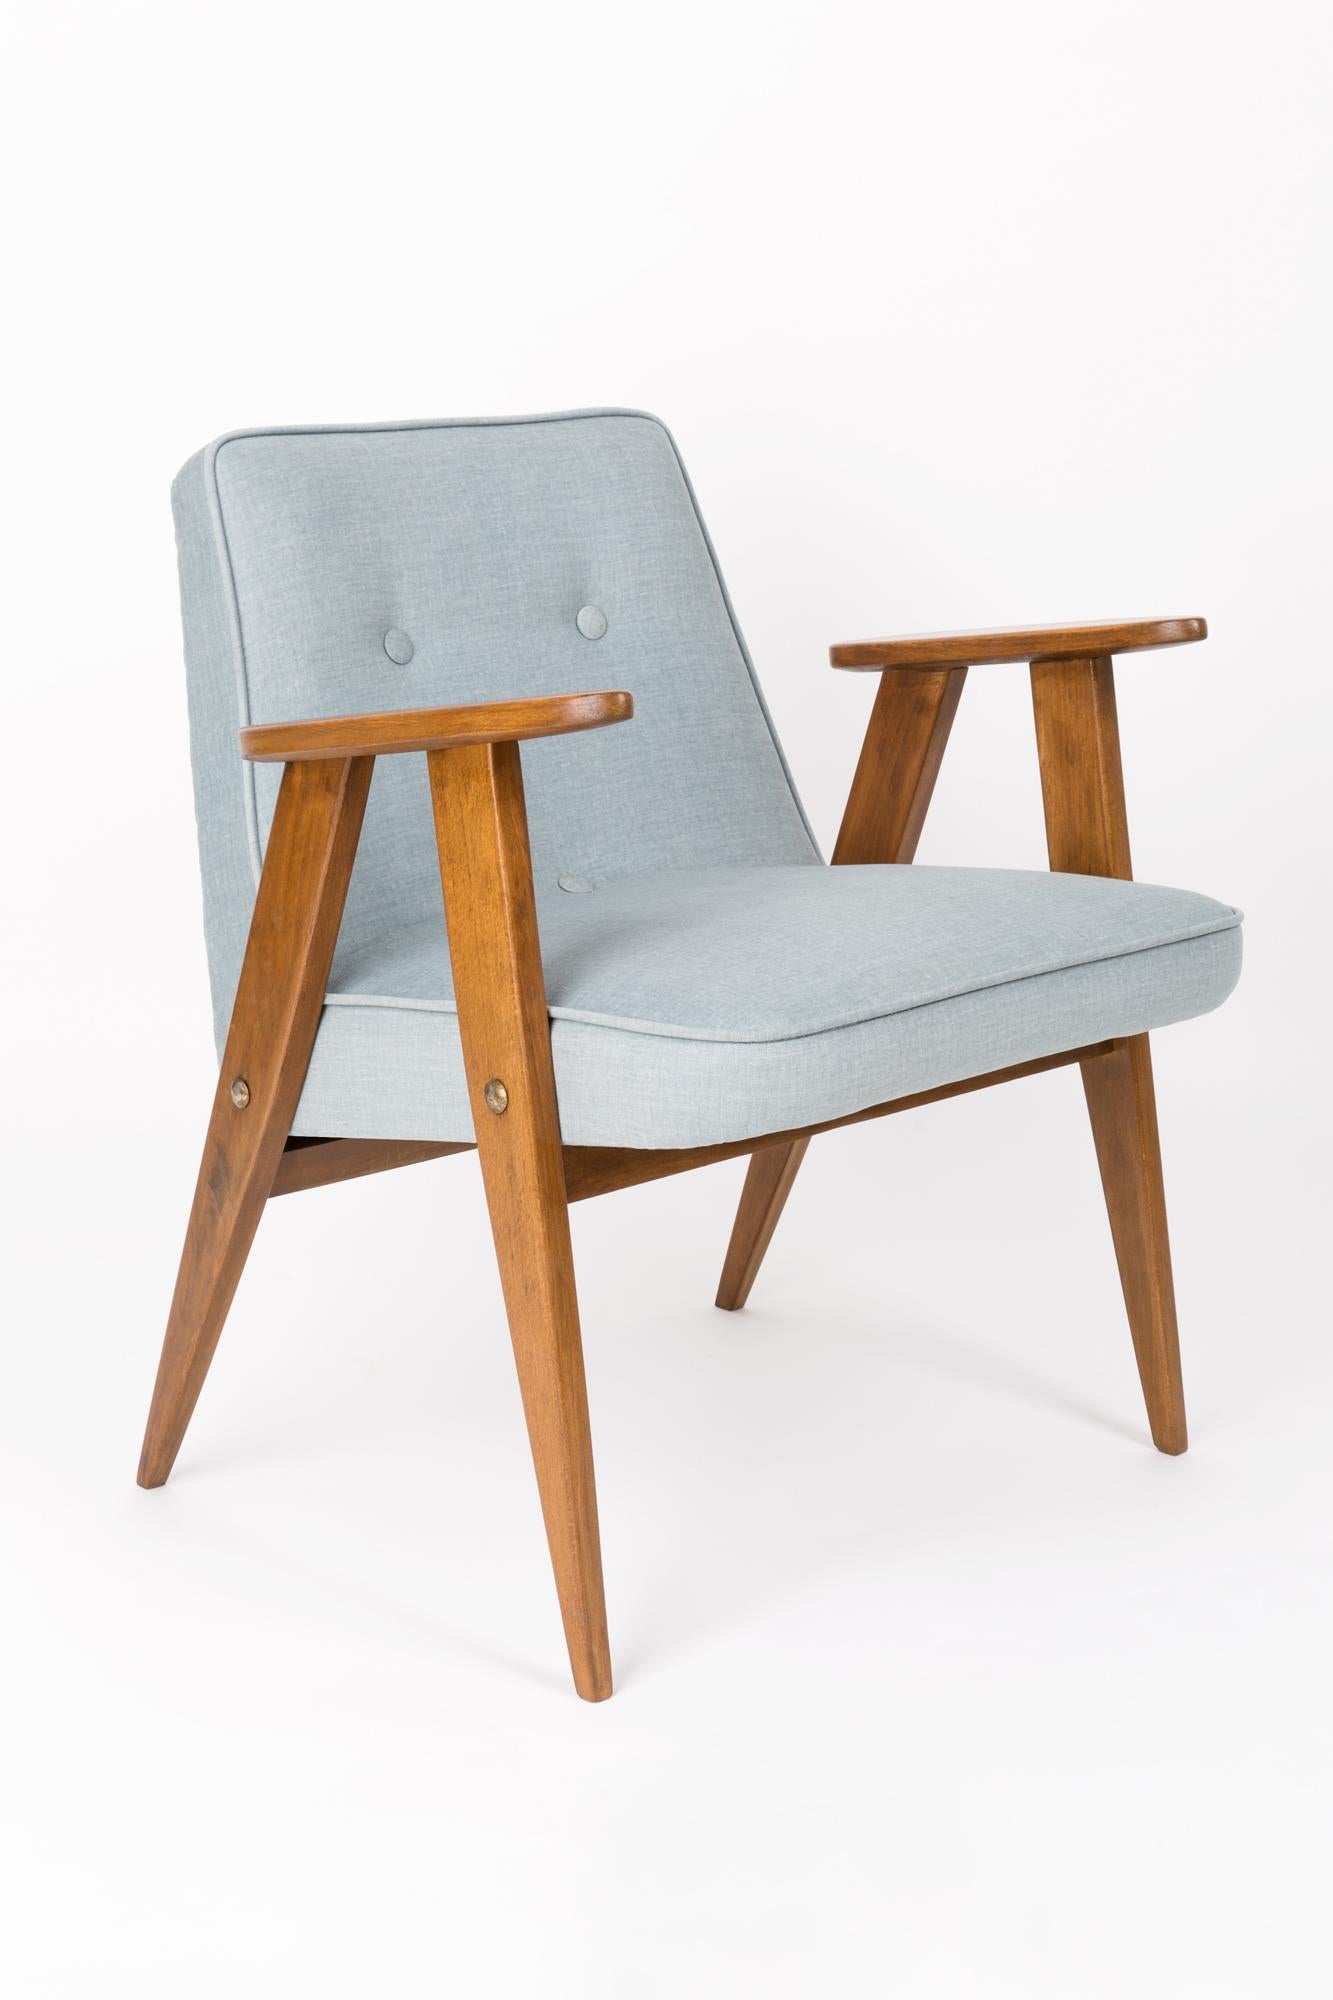 Der Sessel 366 ist eine Ikone des polnischen Designs aus der Zeit der PRL.

Der berühmte Sessel wurde 1962 von dem polnischen Innenarchitekten und Möbeldesigner Jozef Marian Chierowski entworfen. Produziert in der Niederschlesischen Möbelfabrik in